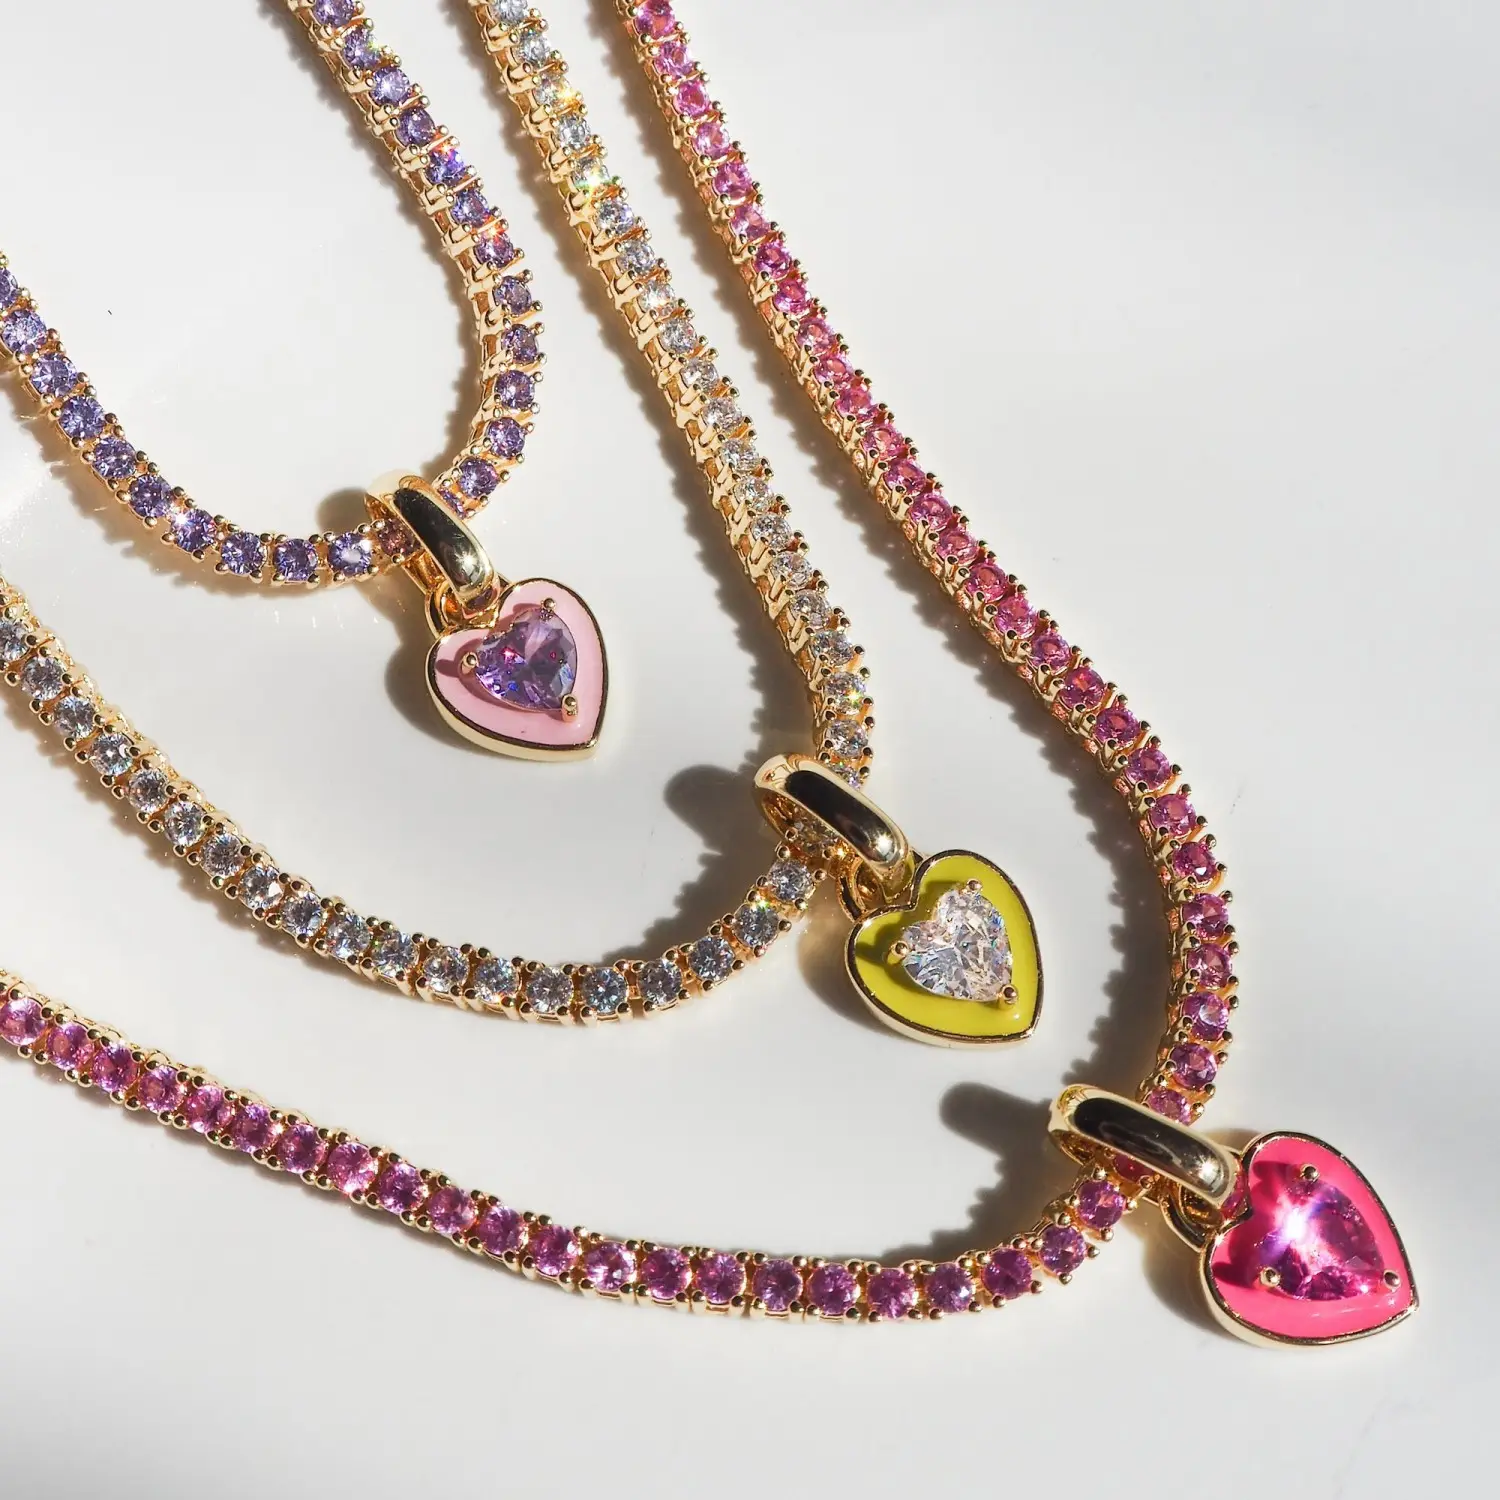 Nuevo estilo de lujo de acero inoxidable colorido collar de circón CADENA DE TENIS collar con colgante en forma de corazón para mujer